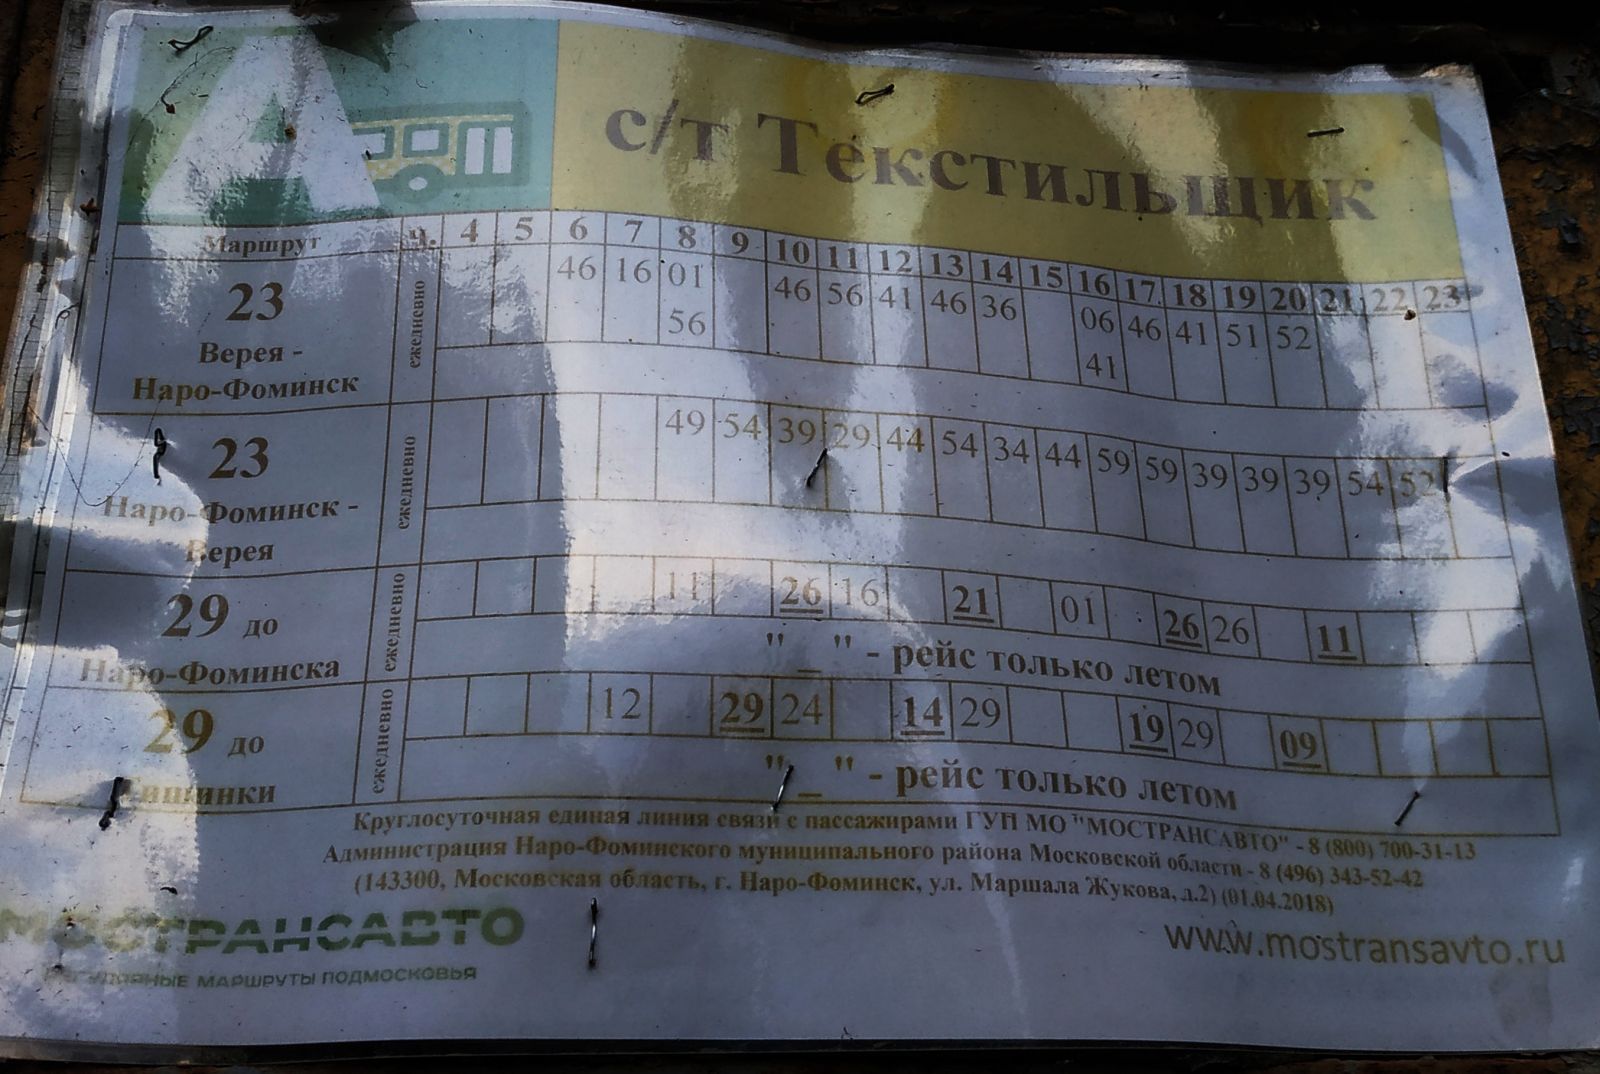 расписание автобусов на остановке у СНТ Текстильщик-2